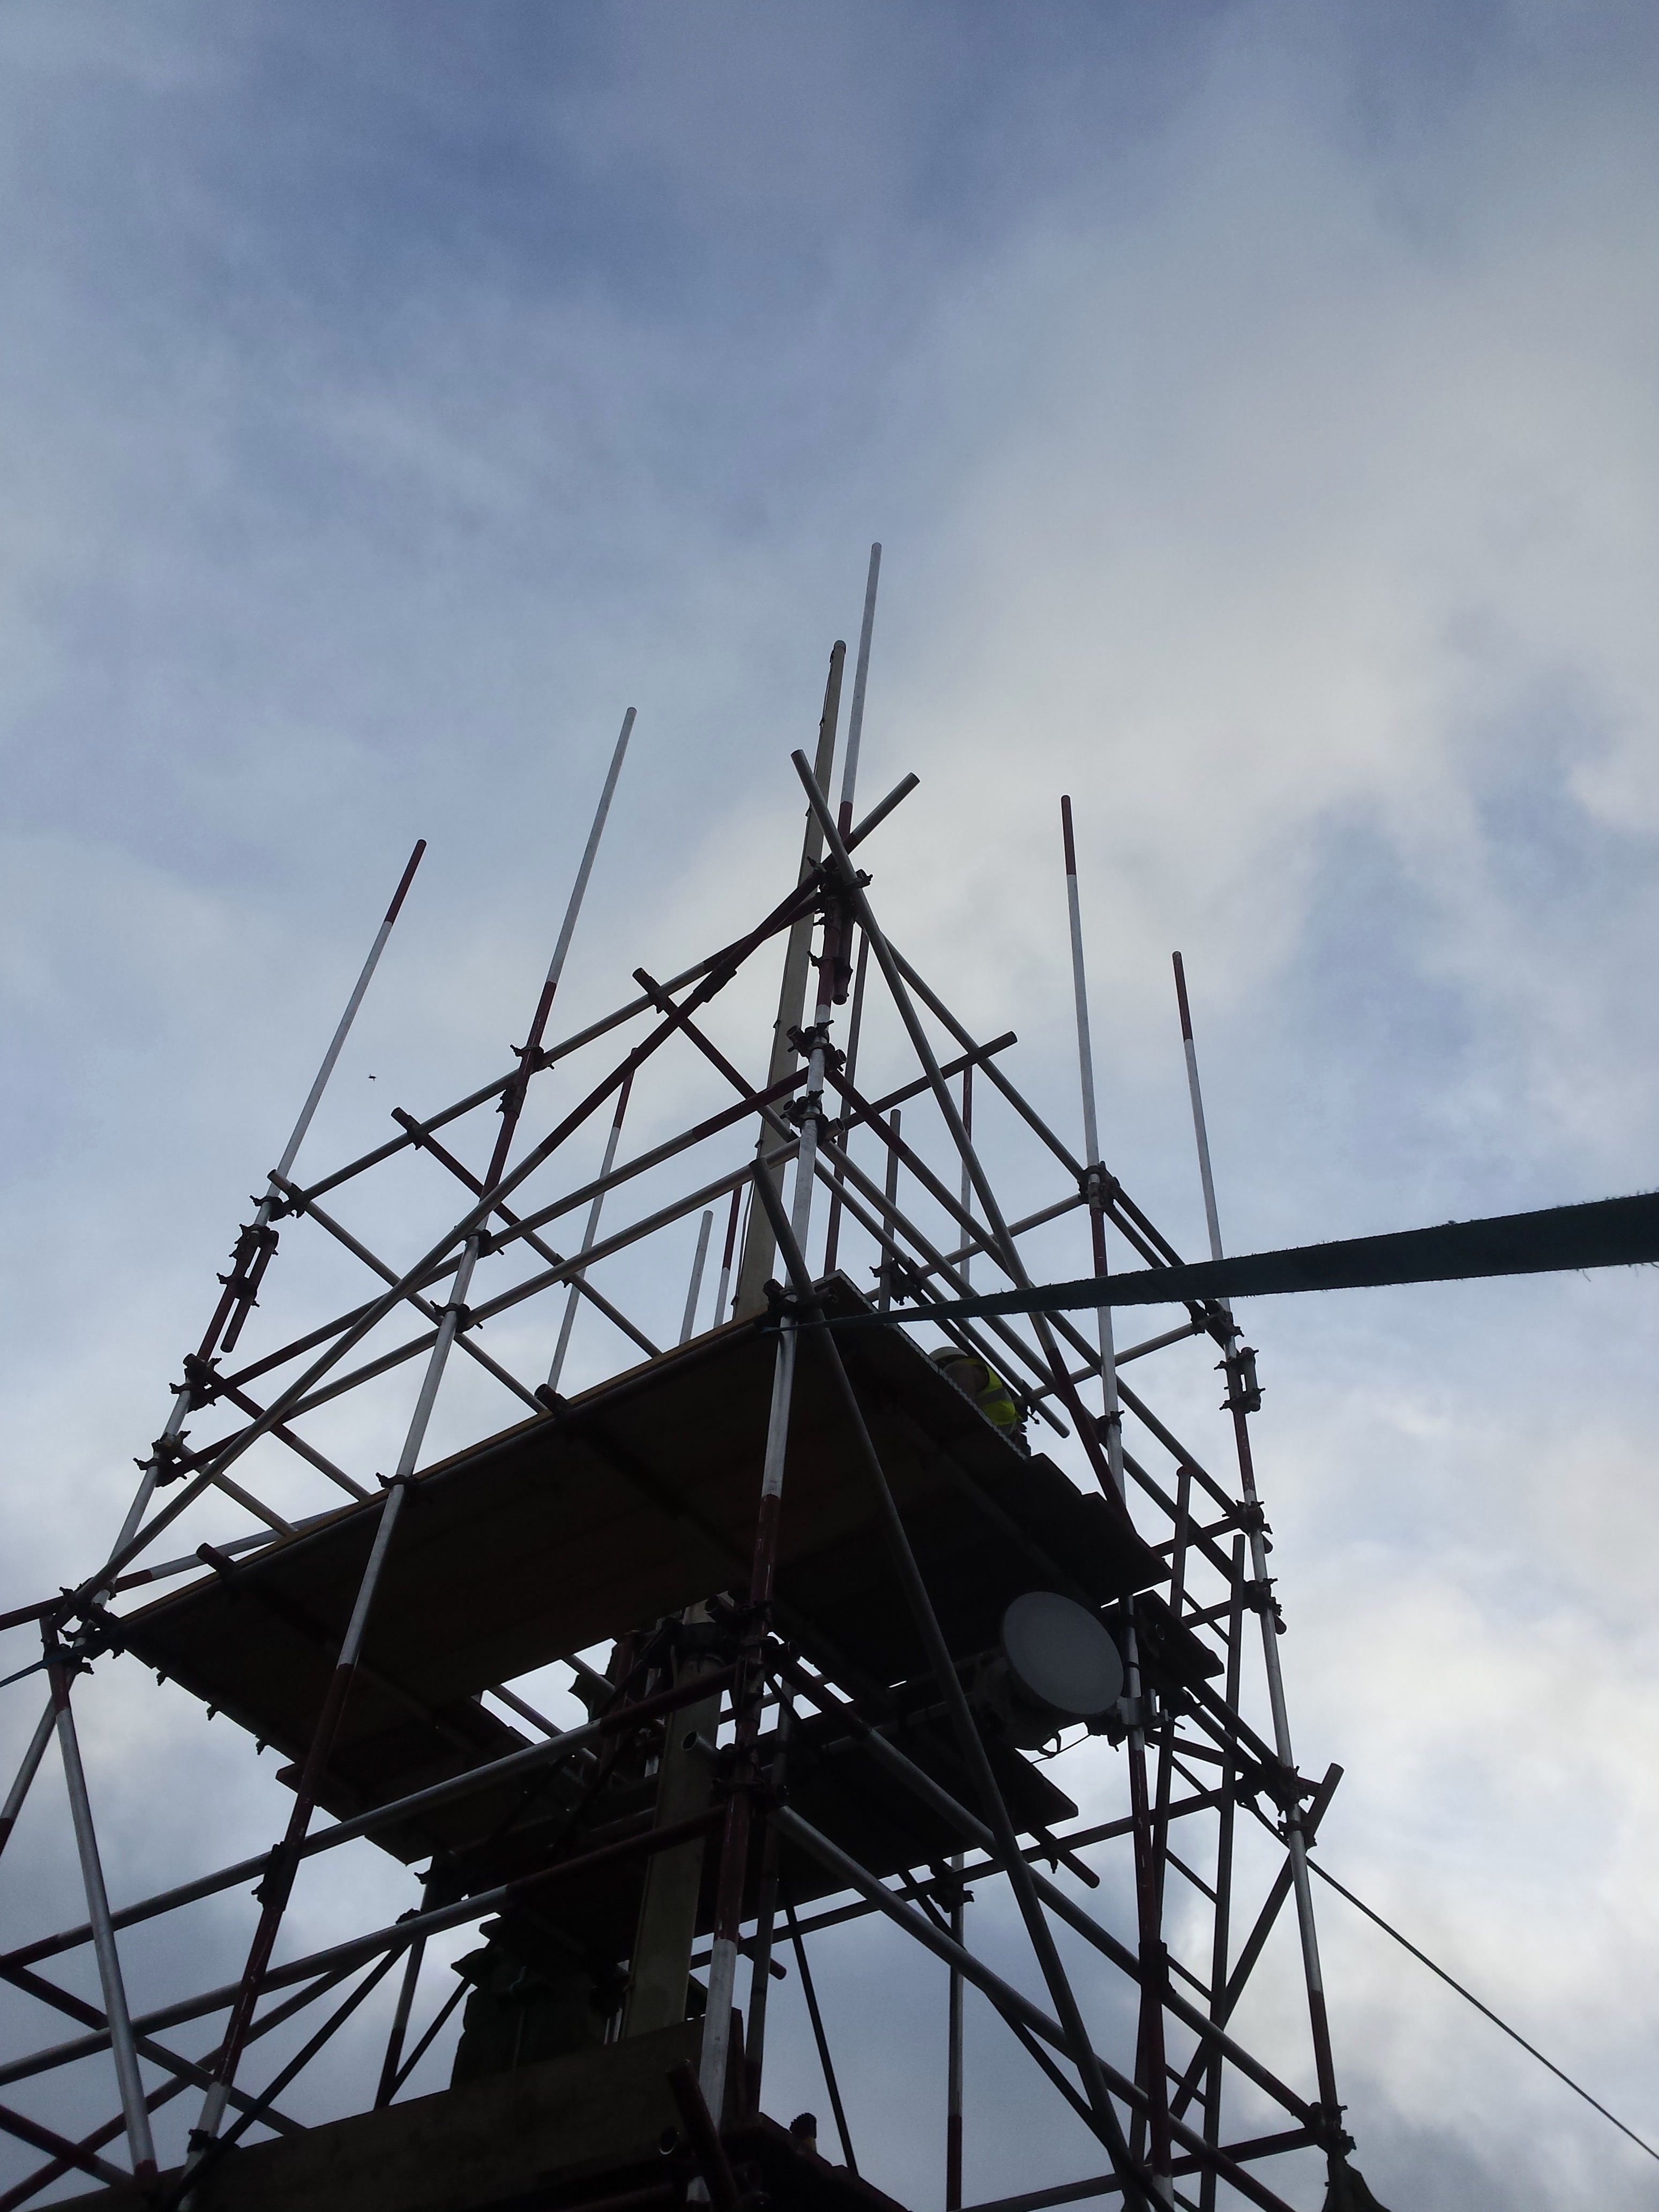 Tamworth Scaffolding: Derby Cathedral - Flagpole
